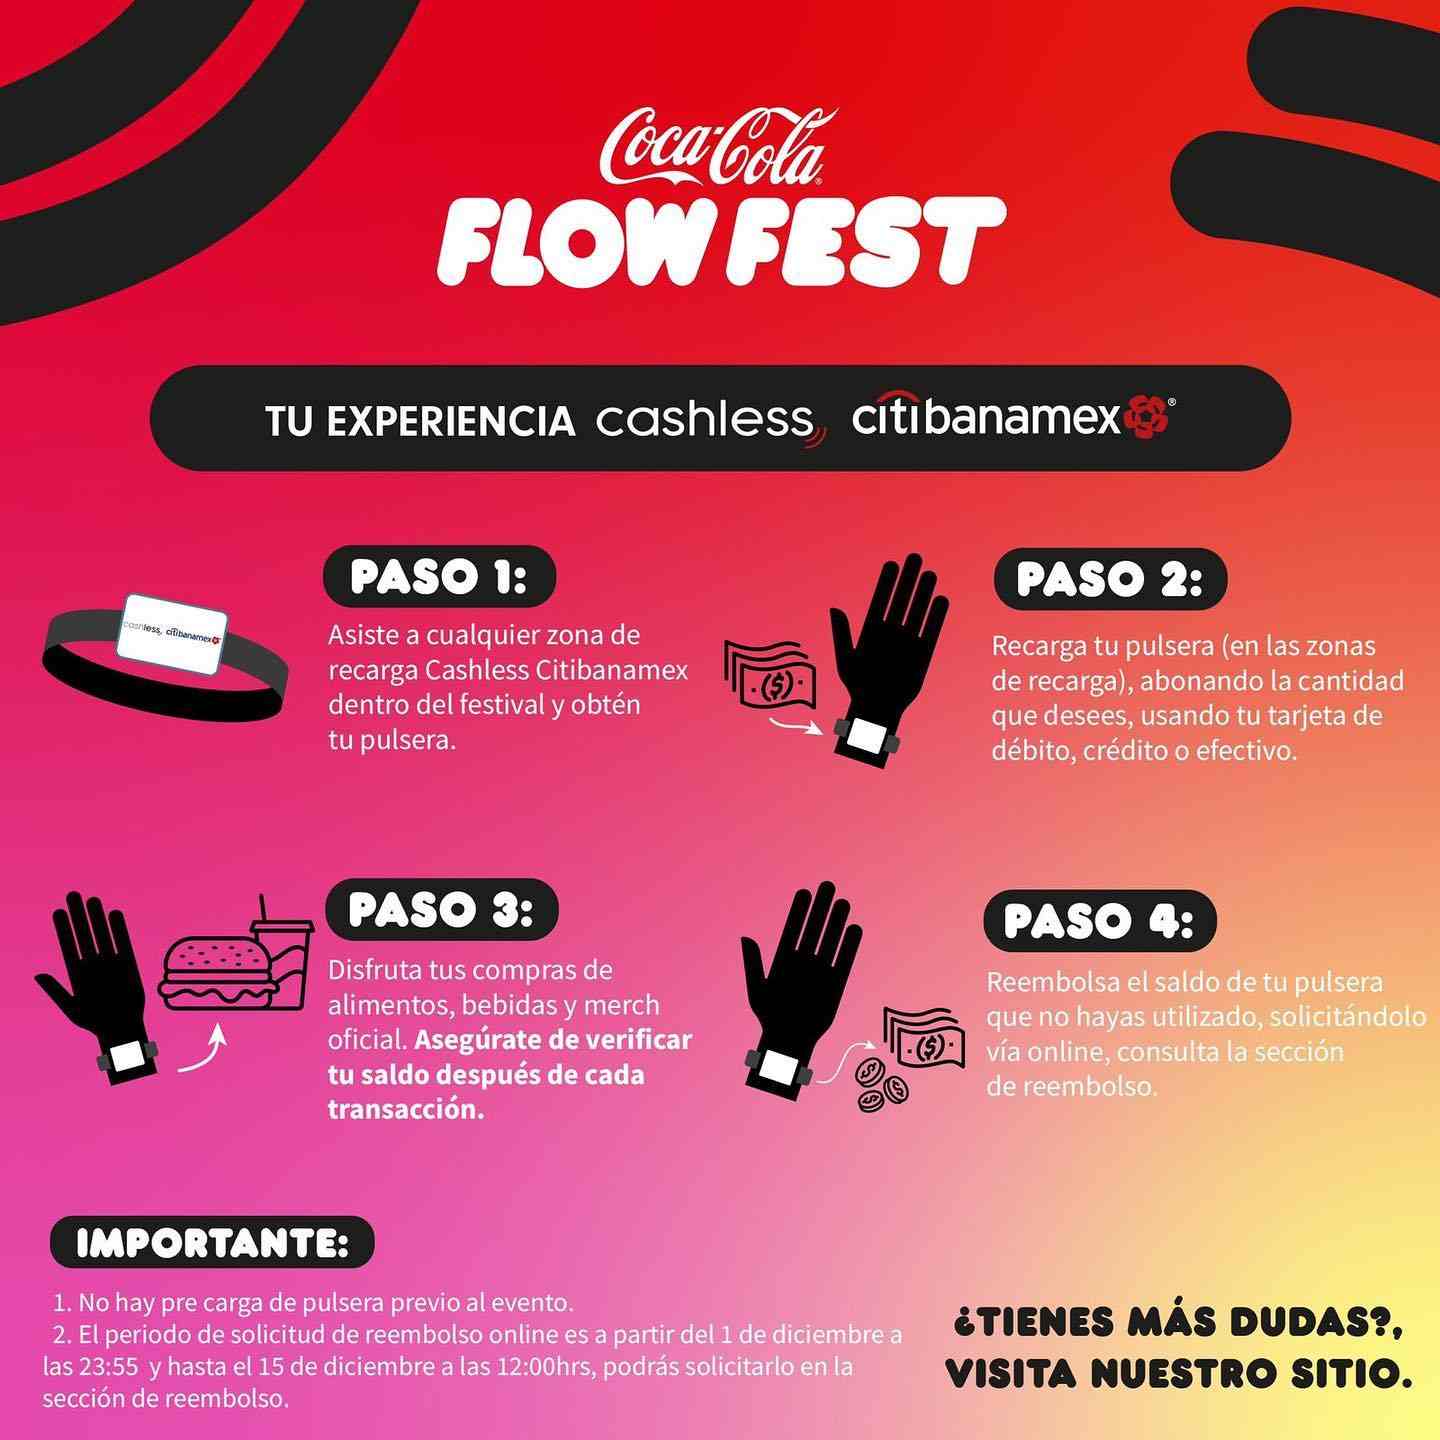 coca-cola-flow-fest-cashless